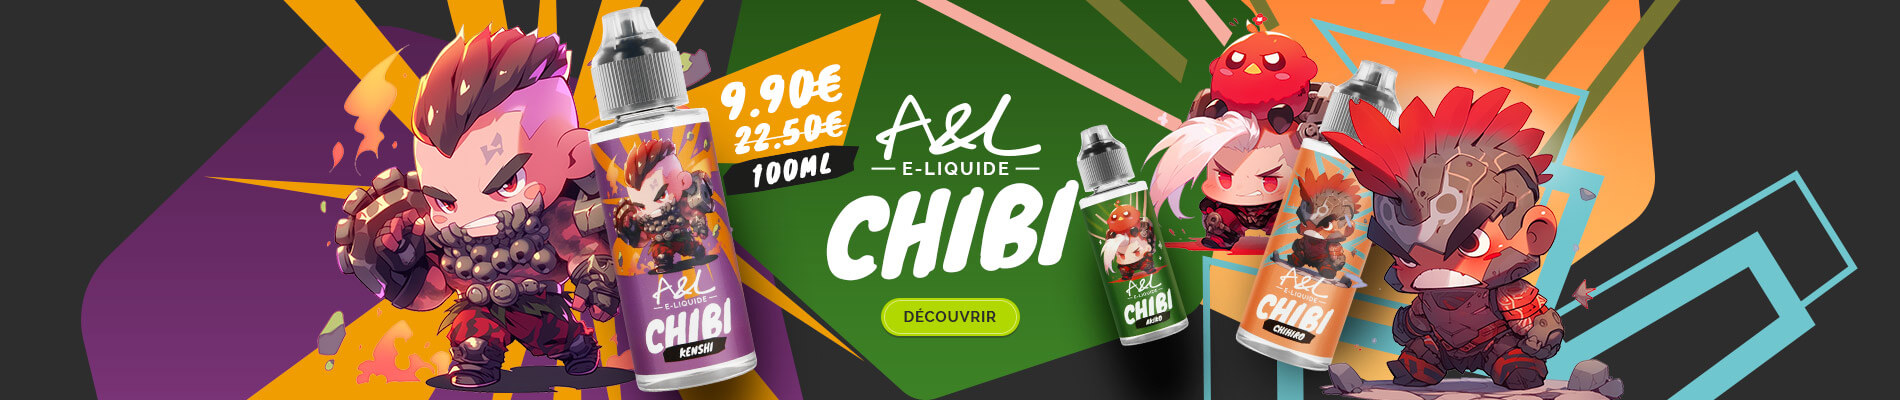 A&L E-Liquide CHIBI